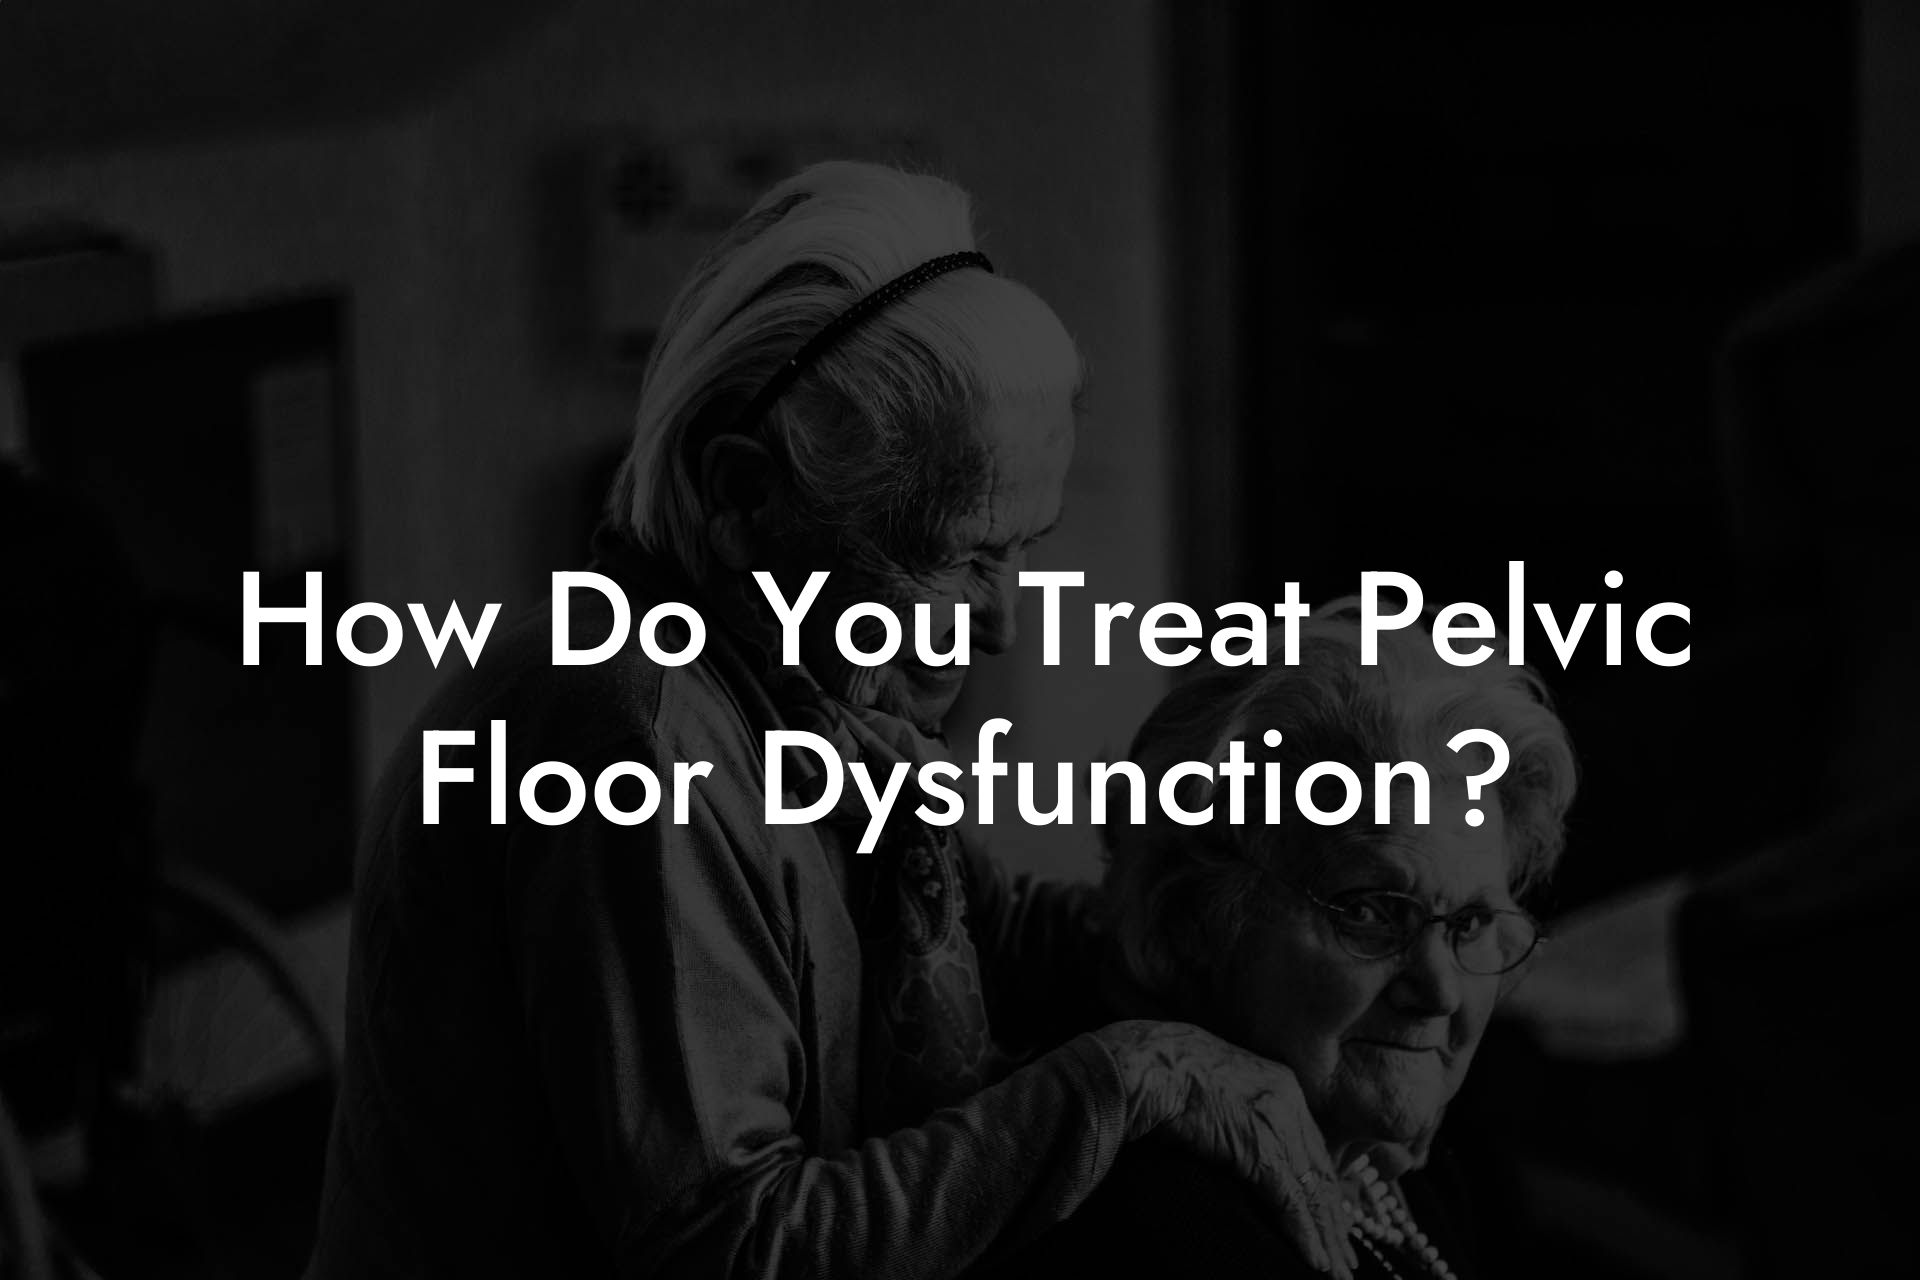 How Do You Treat Pelvic Floor Dysfunction?